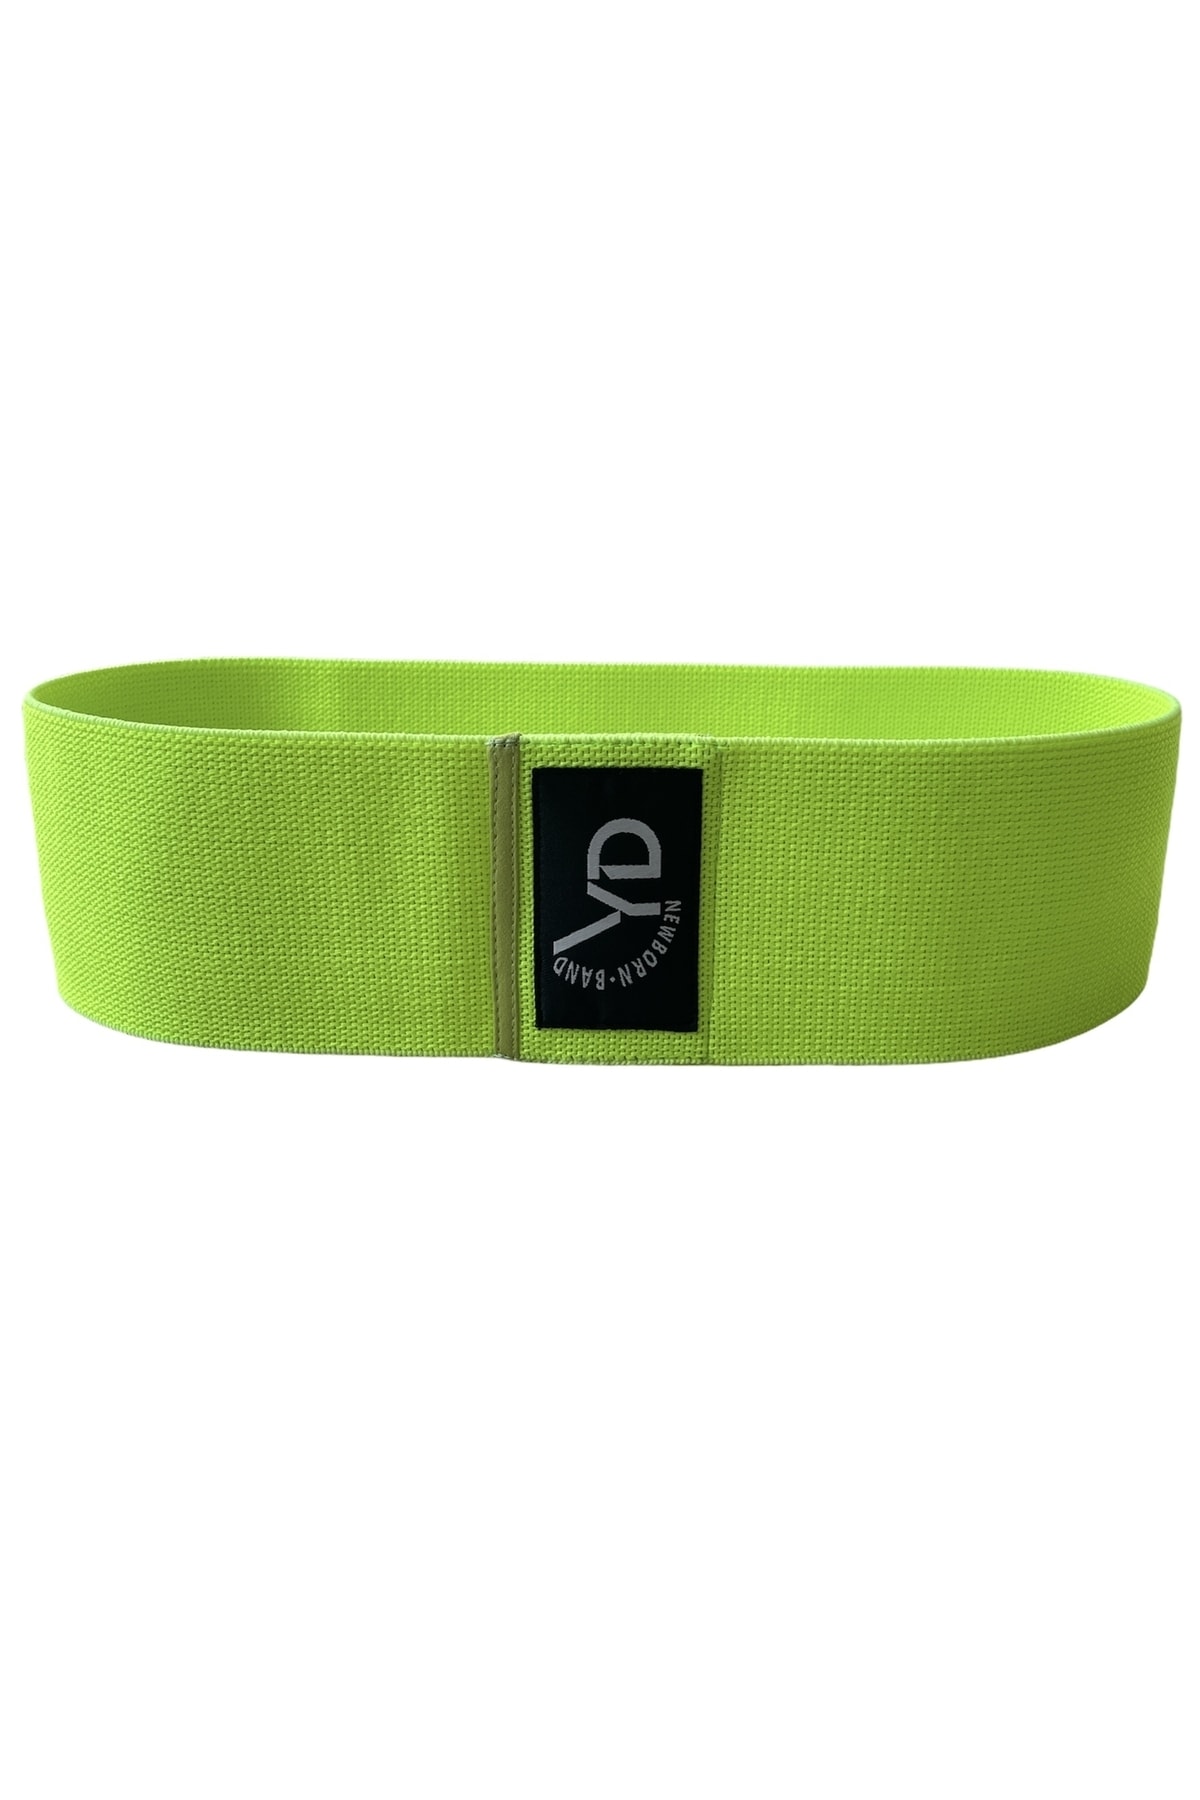 YDFit Loop Band Yd Band Direnç Lastiği Egzersiz Bandı Orta Sert Neon Yeşil 17-21 kg